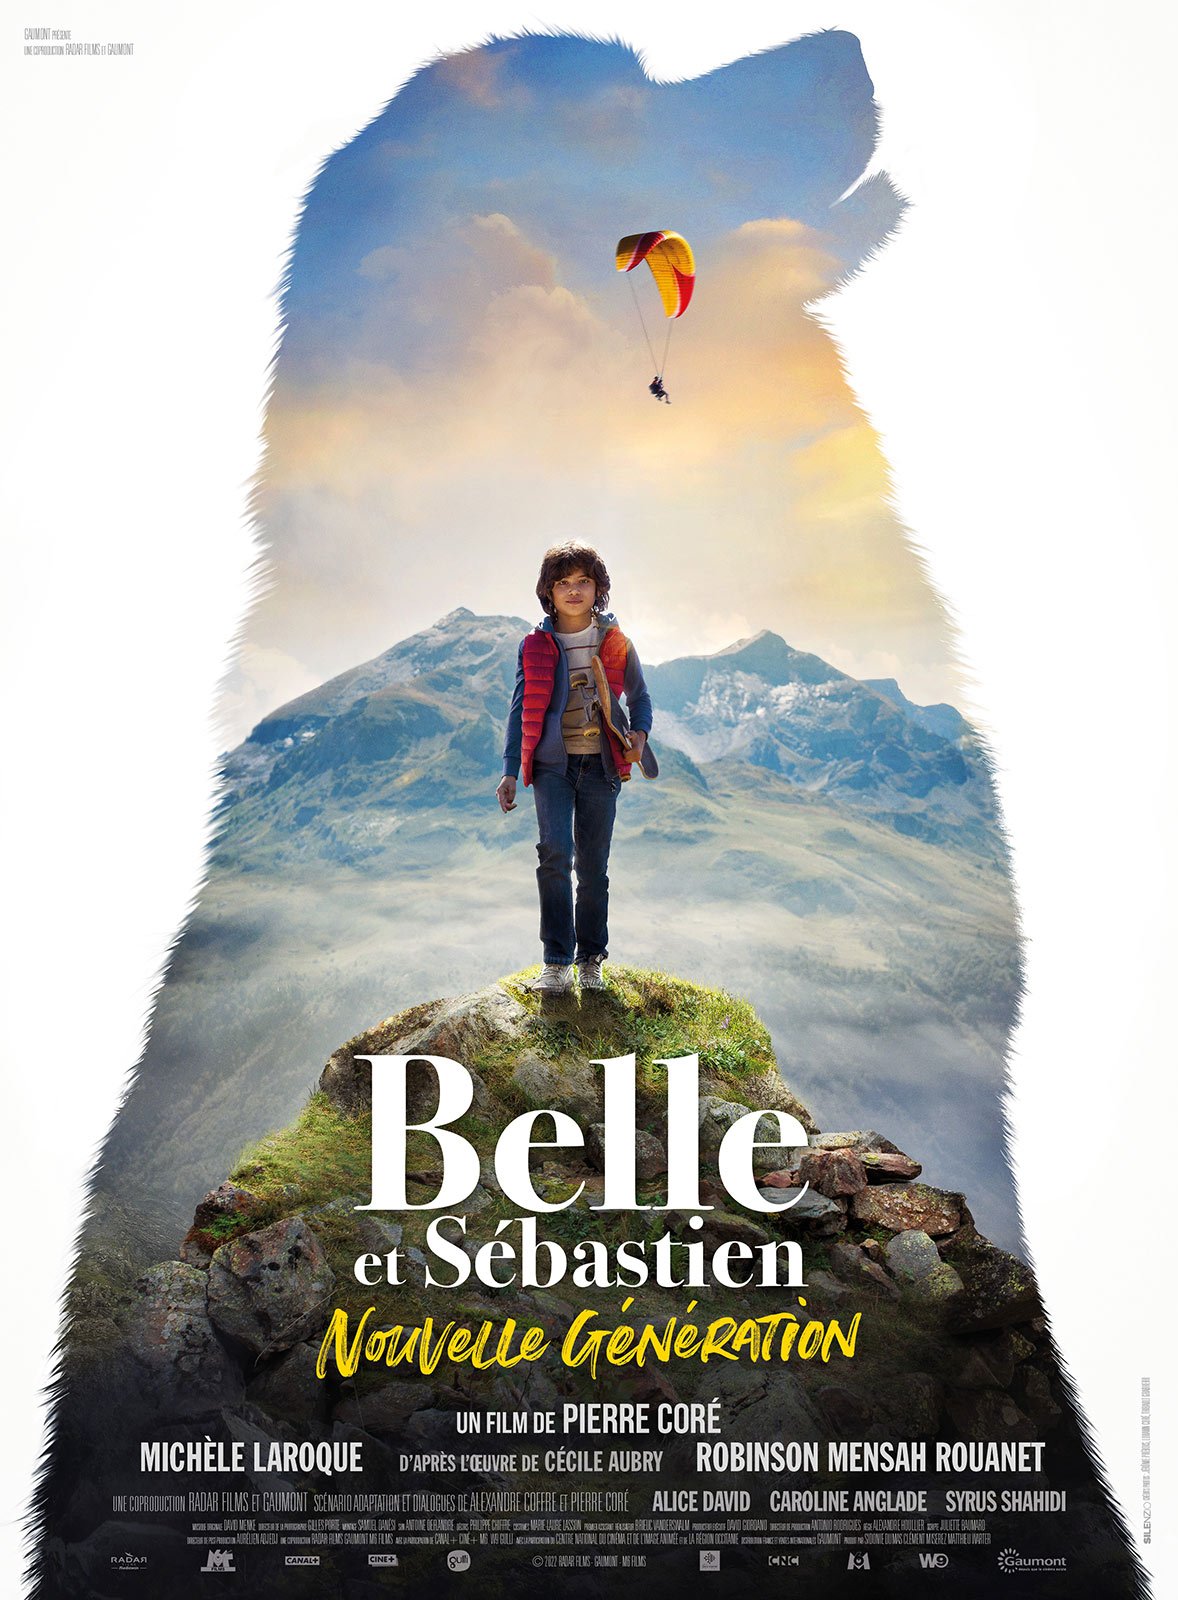 Belle et Sébastien : Nouvelle génération en DVD : Belle et Sébastien, nouvelle génération DVD - AlloCiné